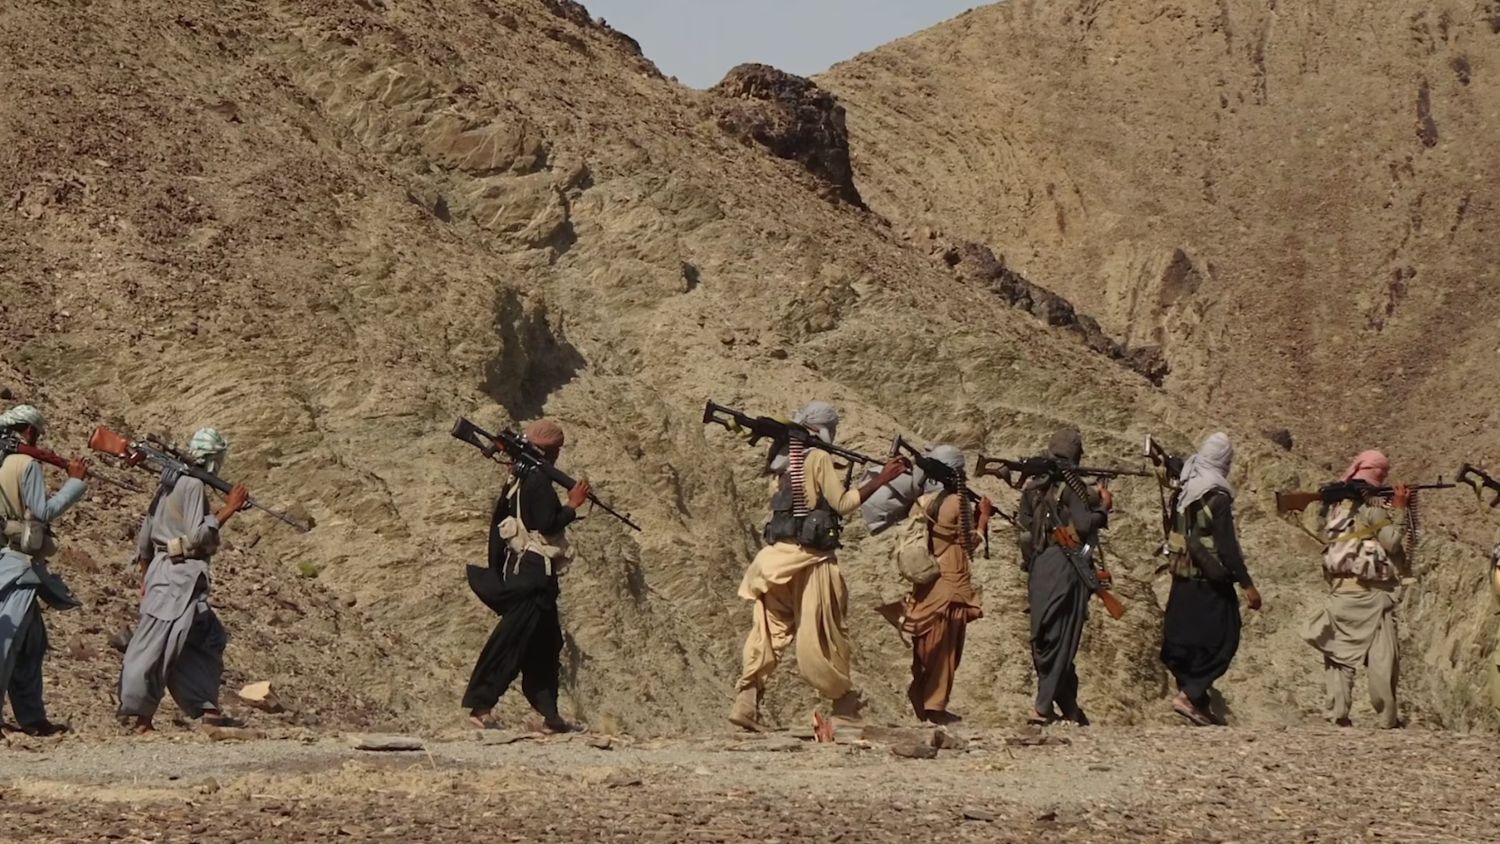 Balochistan insurgency